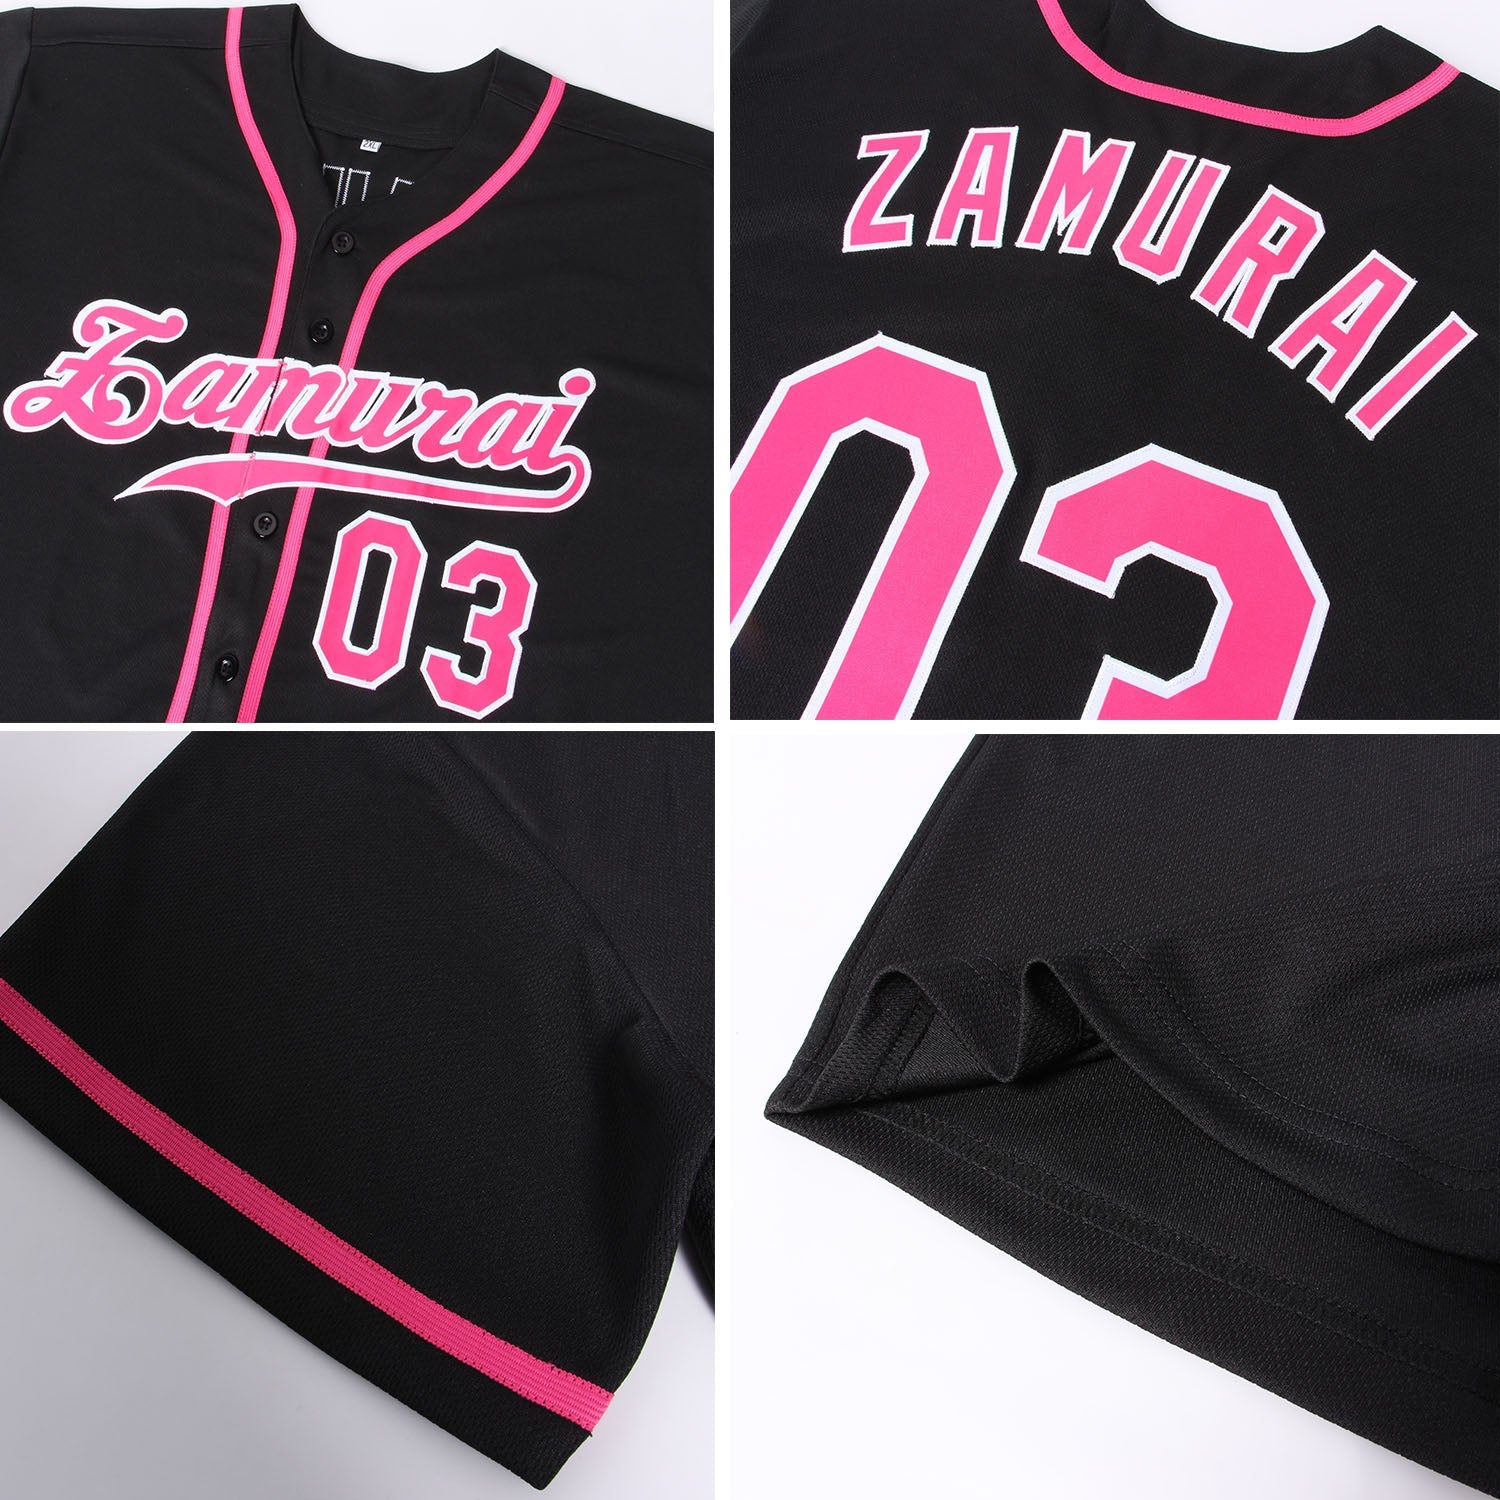 Benutzerdefiniertes schwarz-rosa-weißes, authentisches Baseball-Trikot